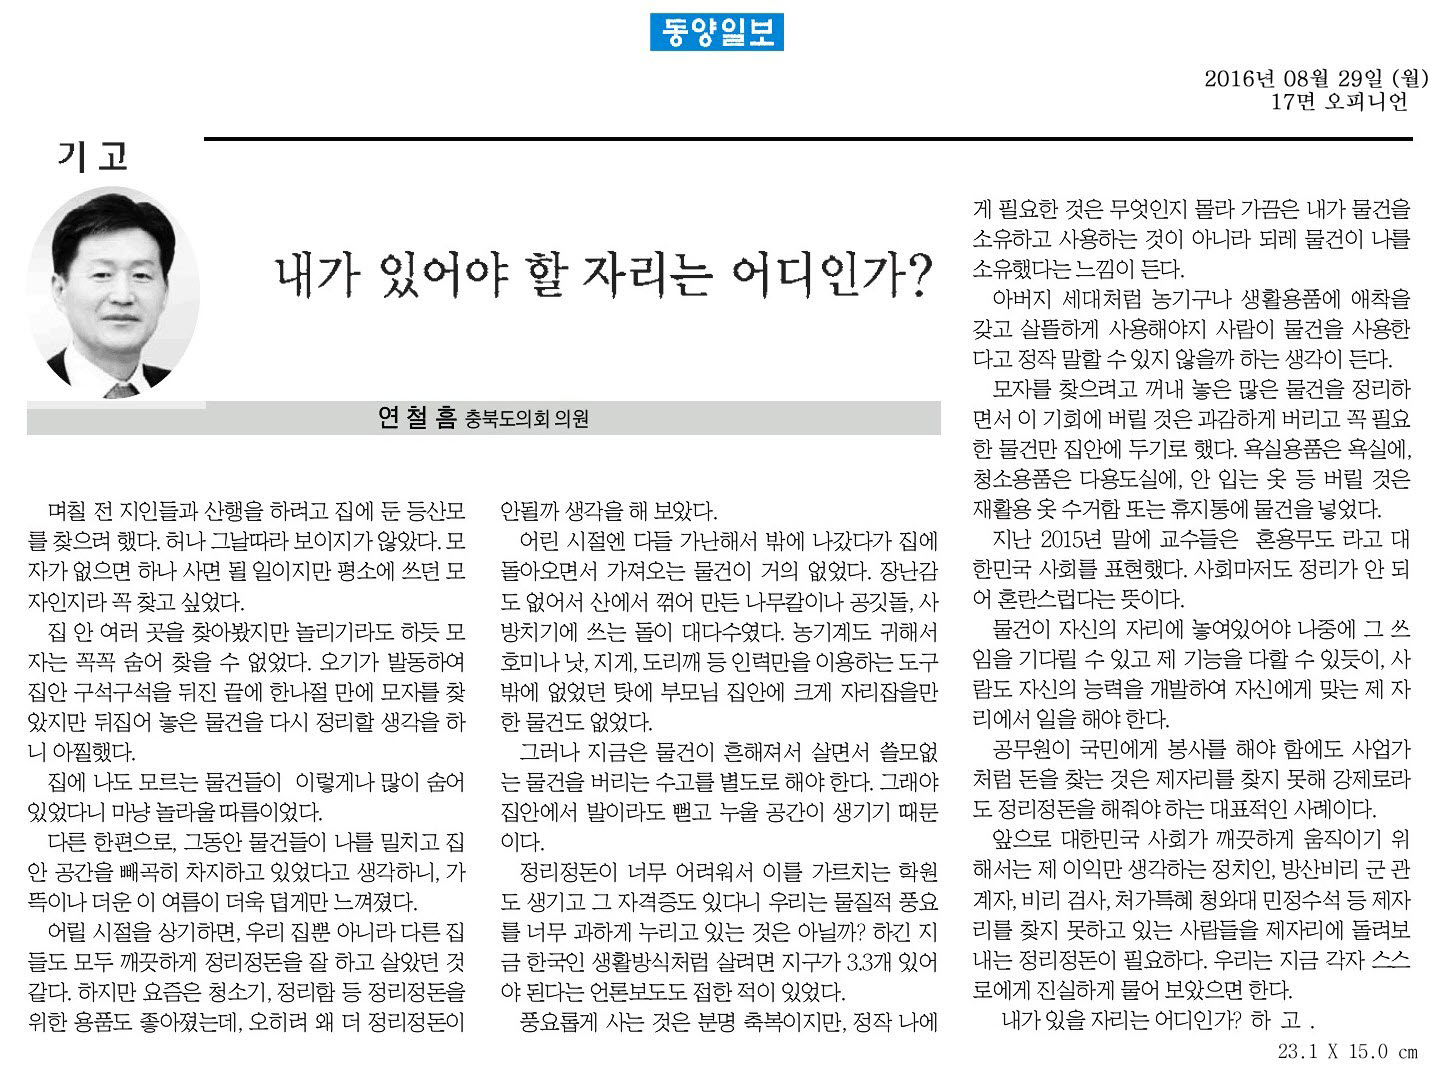 내가 있어야 할 자리는 어디인가-연철흠 의원(동양일보 2016년 8월 29일) - 1